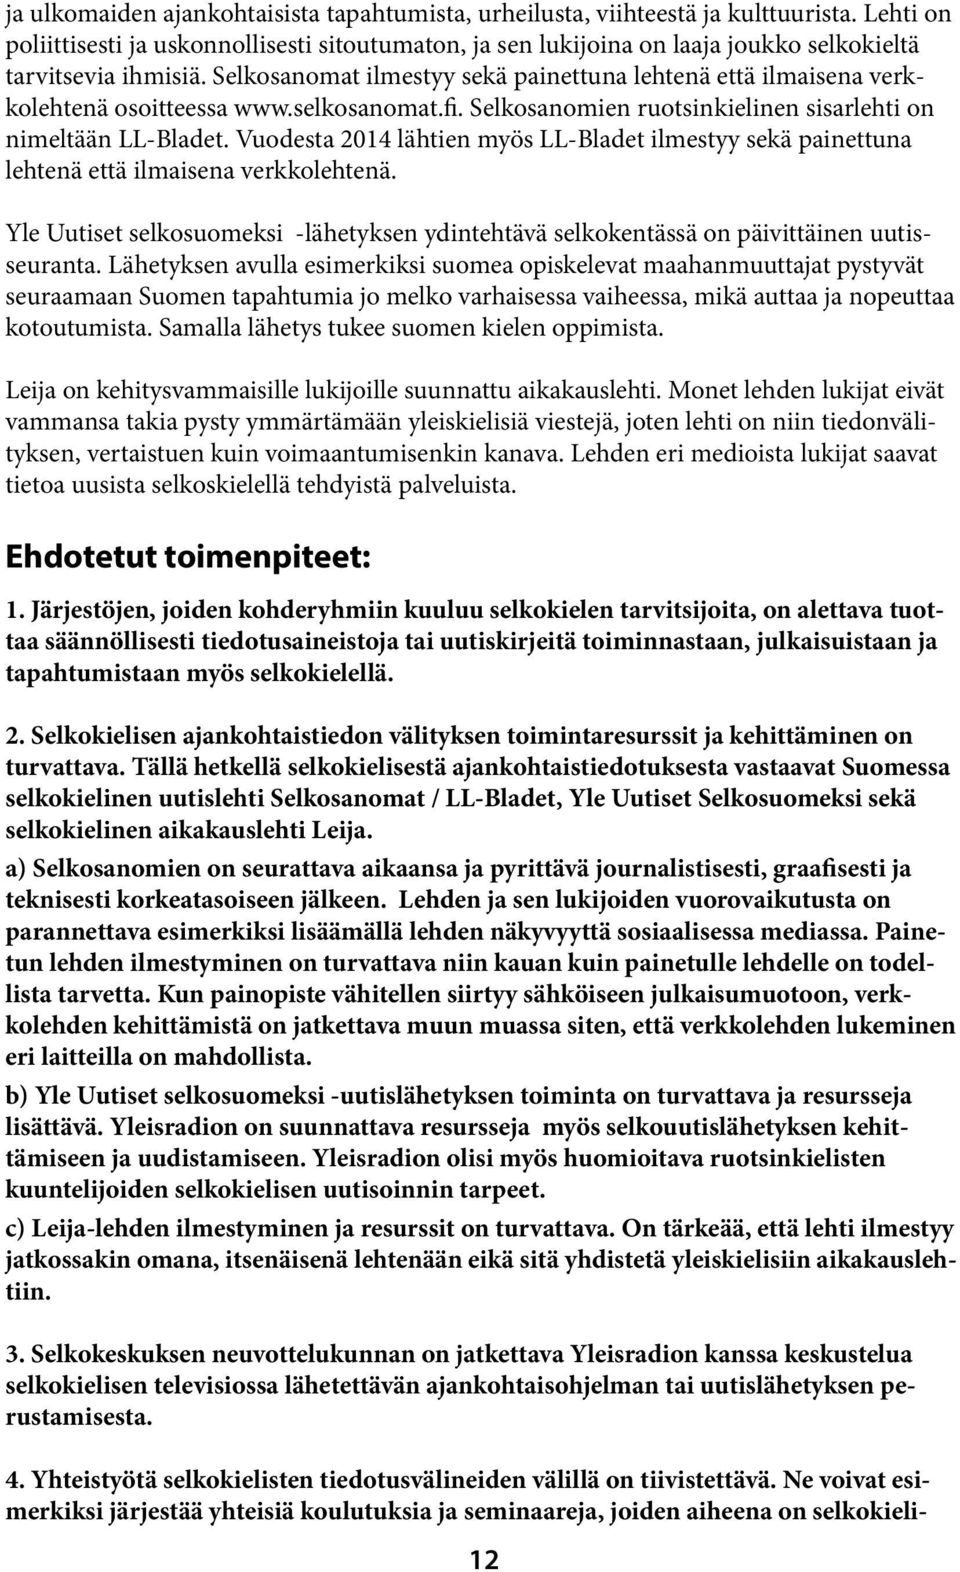 Selkosanomat ilmestyy sekä painettuna lehtenä että ilmaisena verkkolehtenä osoitteessa www.selkosanomat.fi. Selkosanomien ruotsinkielinen sisarlehti on nimeltään LL-Bladet.